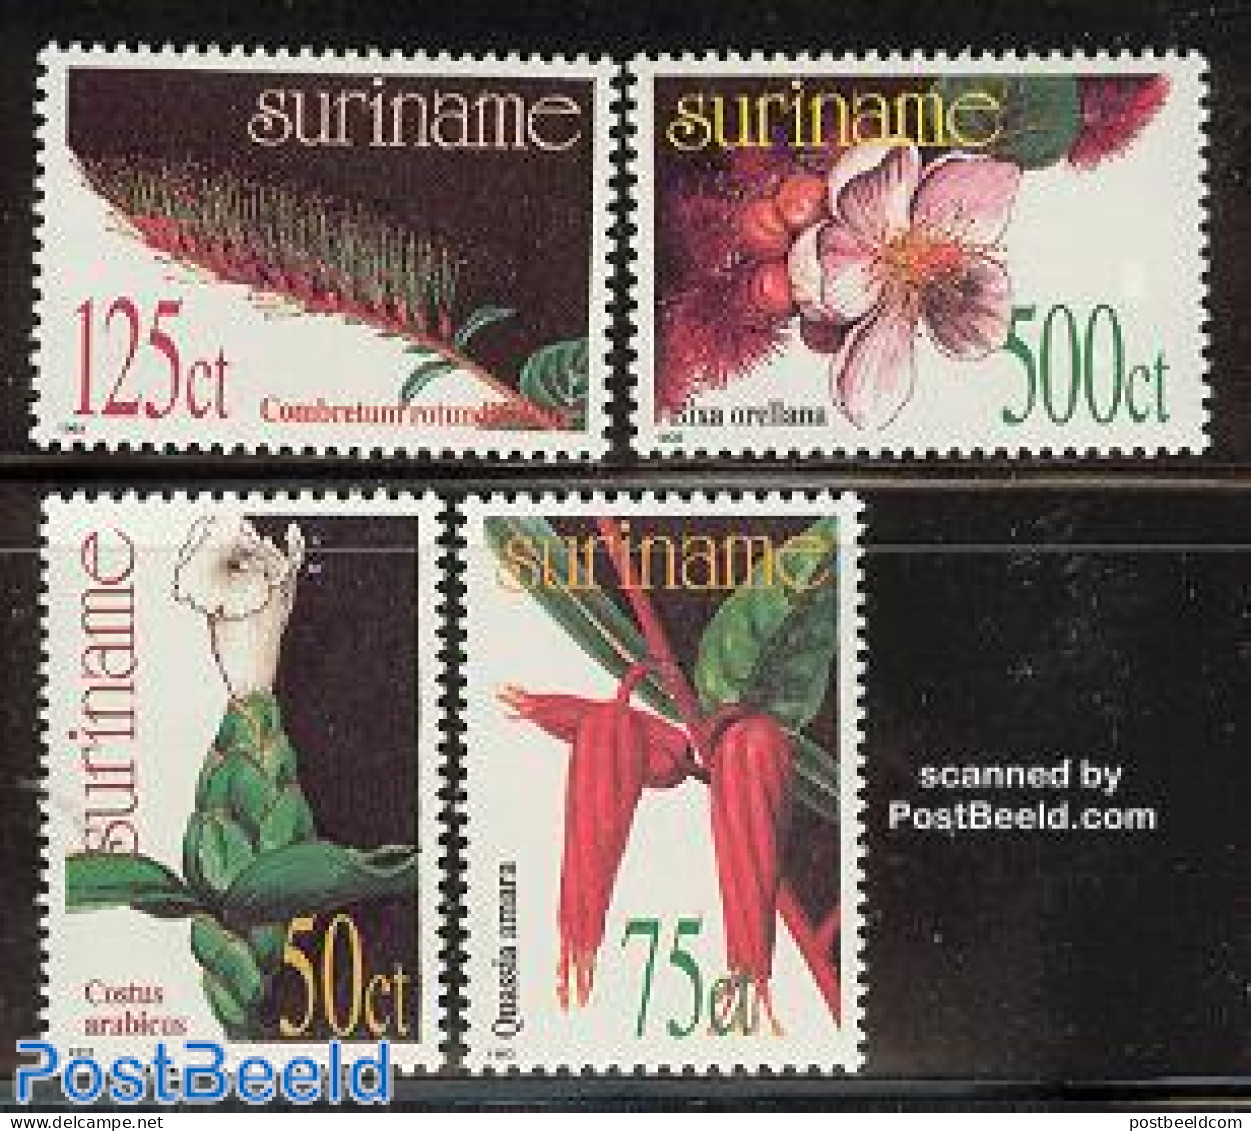 Suriname, Republic 1993 Medical Plants 4v, Mint NH, Nature - Flowers & Plants - Surinam